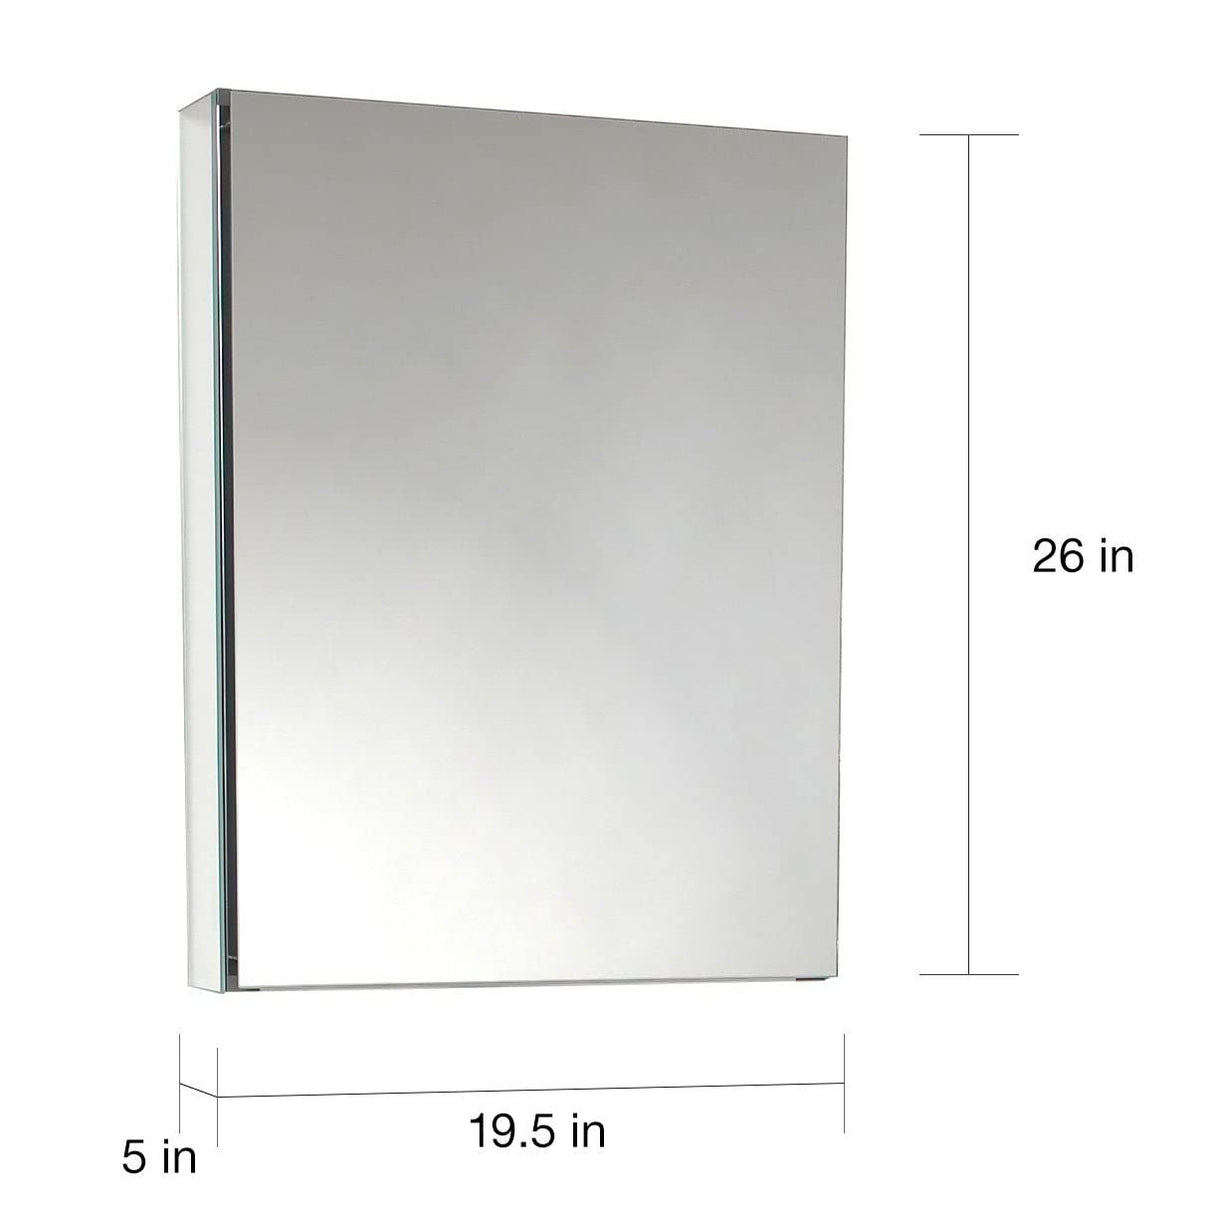 Fresca FMC8058 Fresca 20" Wide x 26" Tall Bathroom Medicine Cabinet w/ Mirrors